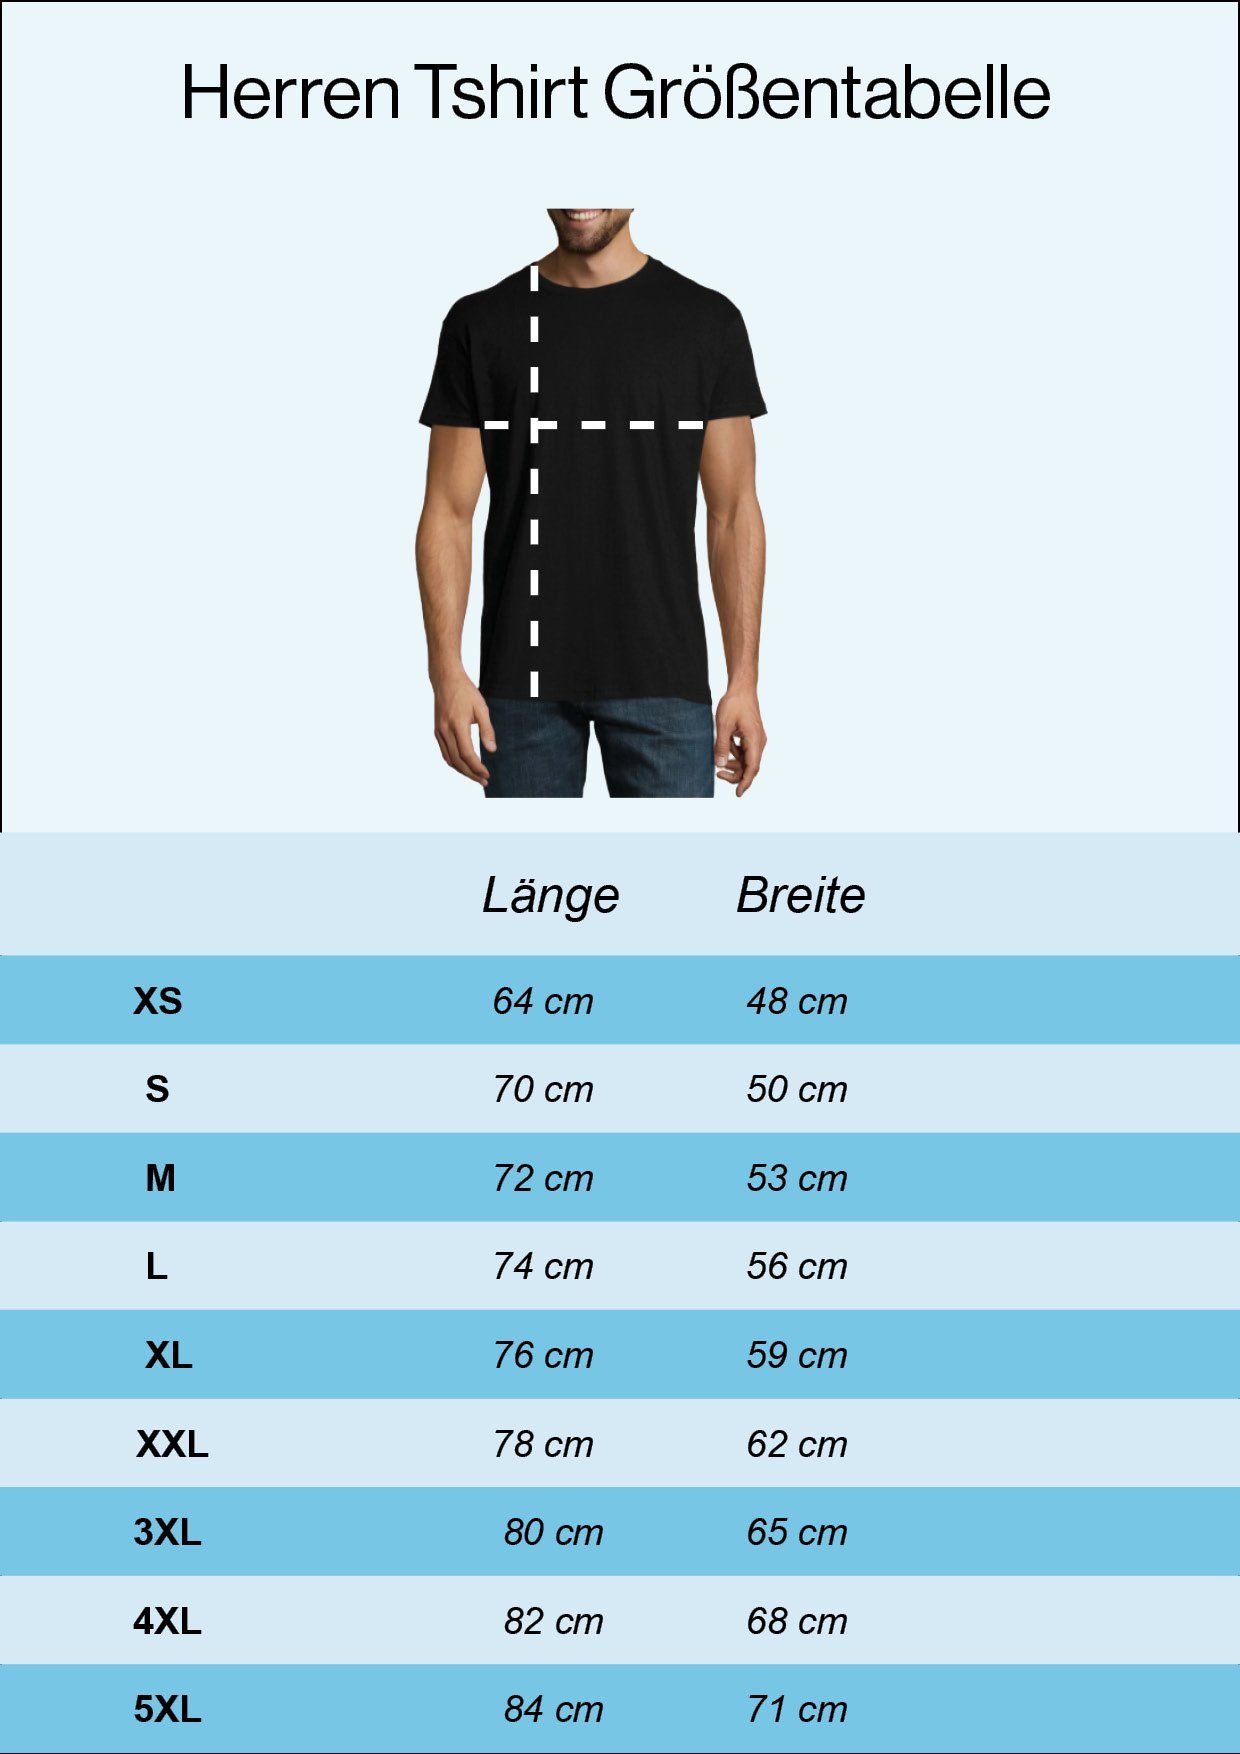 Youth mit Frontprint Evolution Shirt Designz T-Shirt trendigem Storage Herren Navyblau